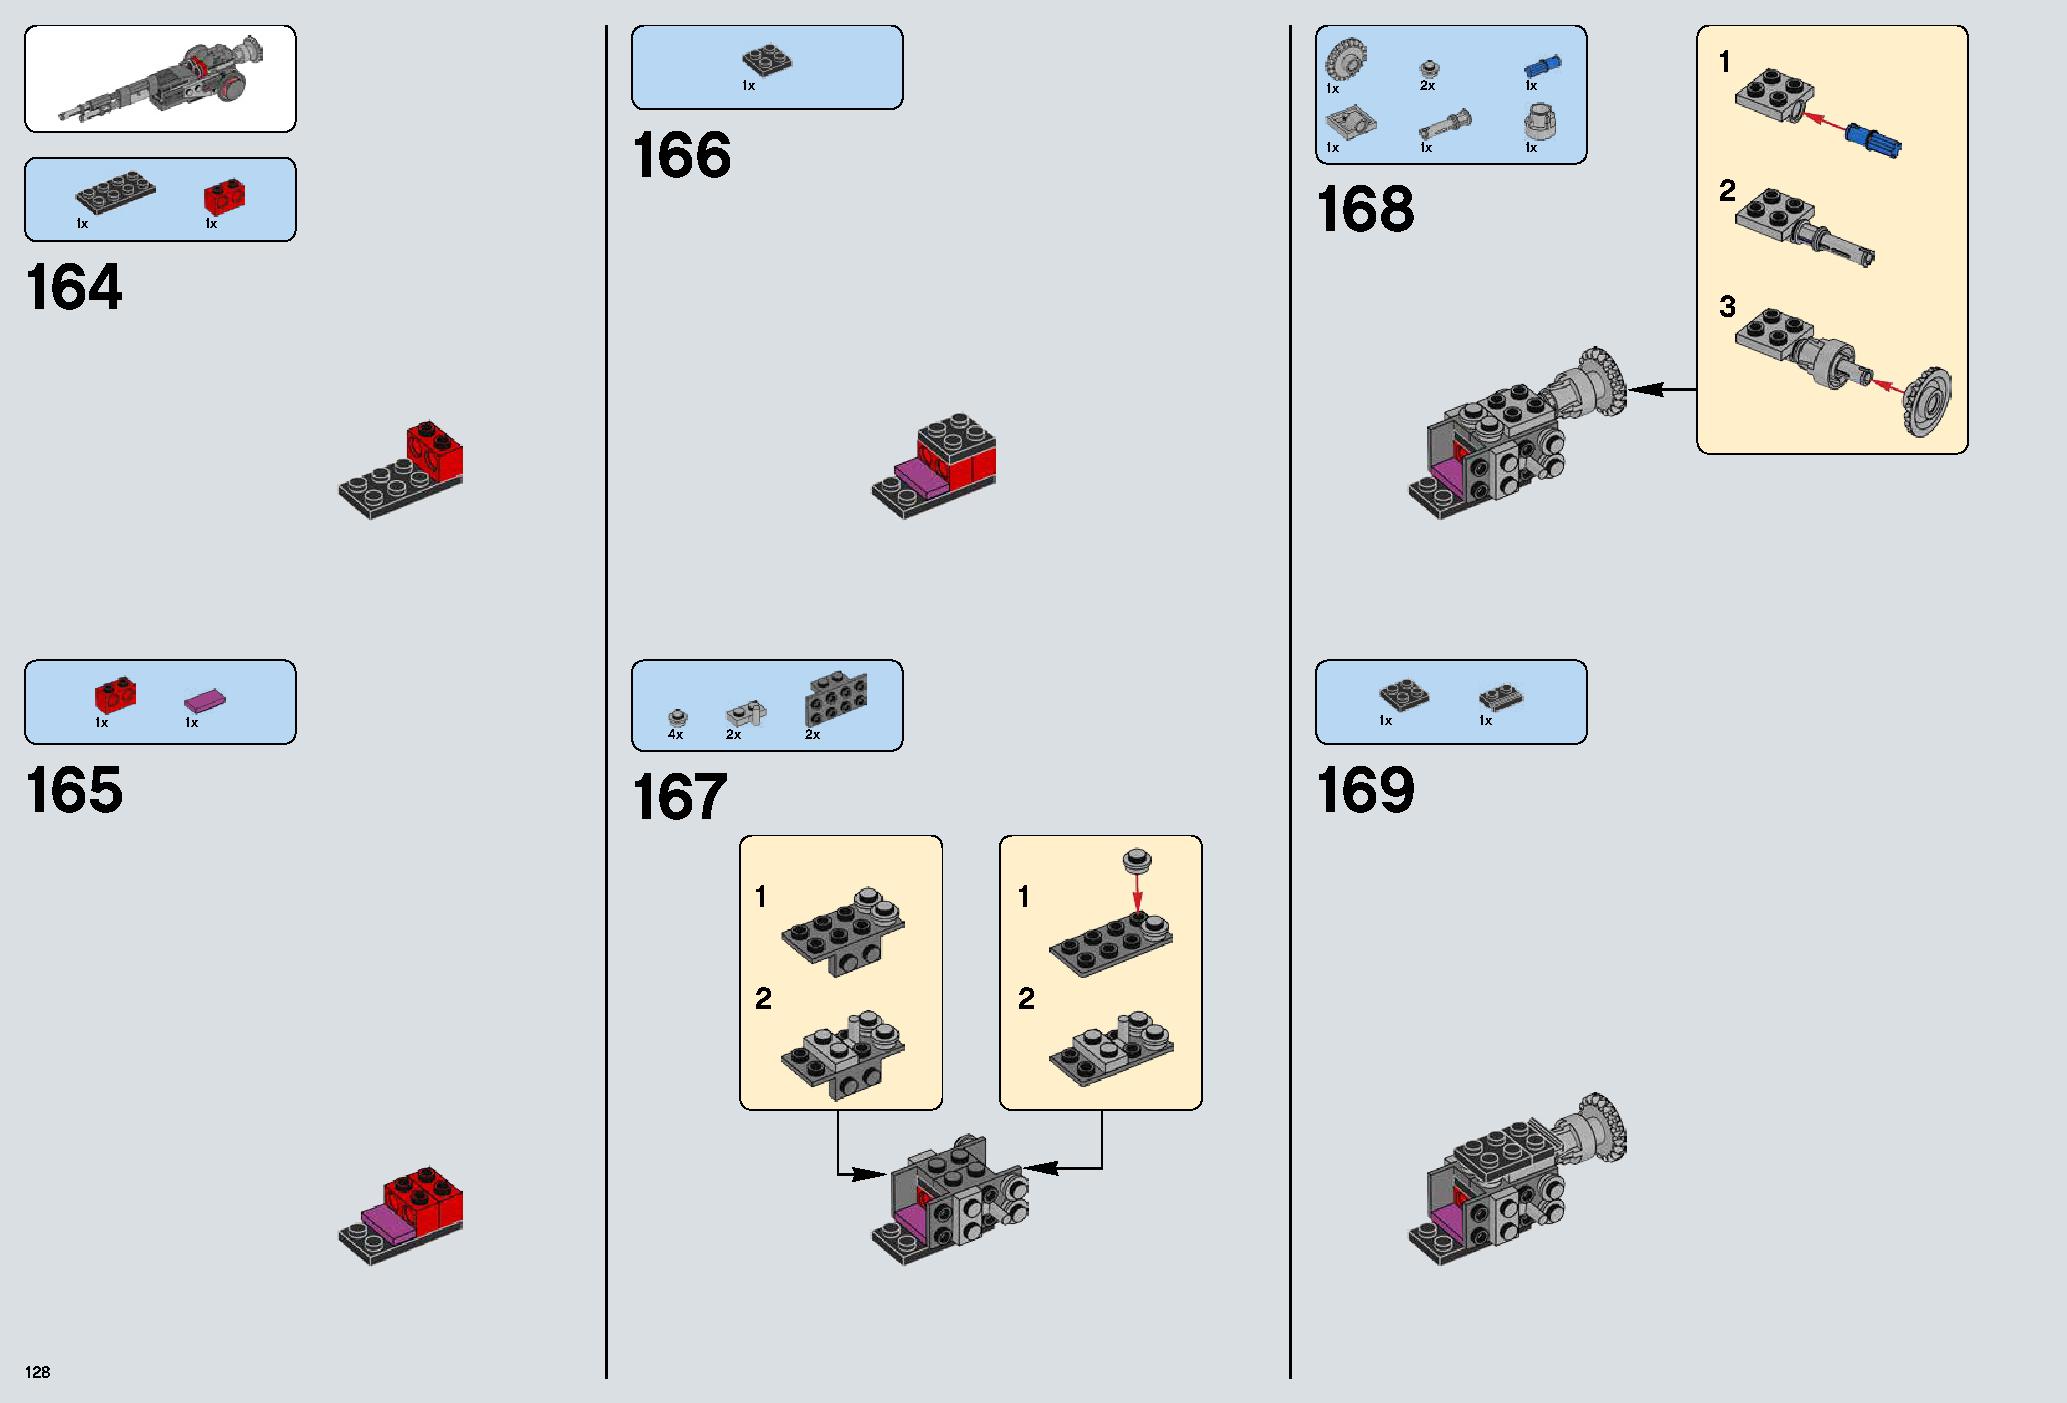 デス・スター 75159 レゴの商品情報 レゴの説明書・組立方法 128 page